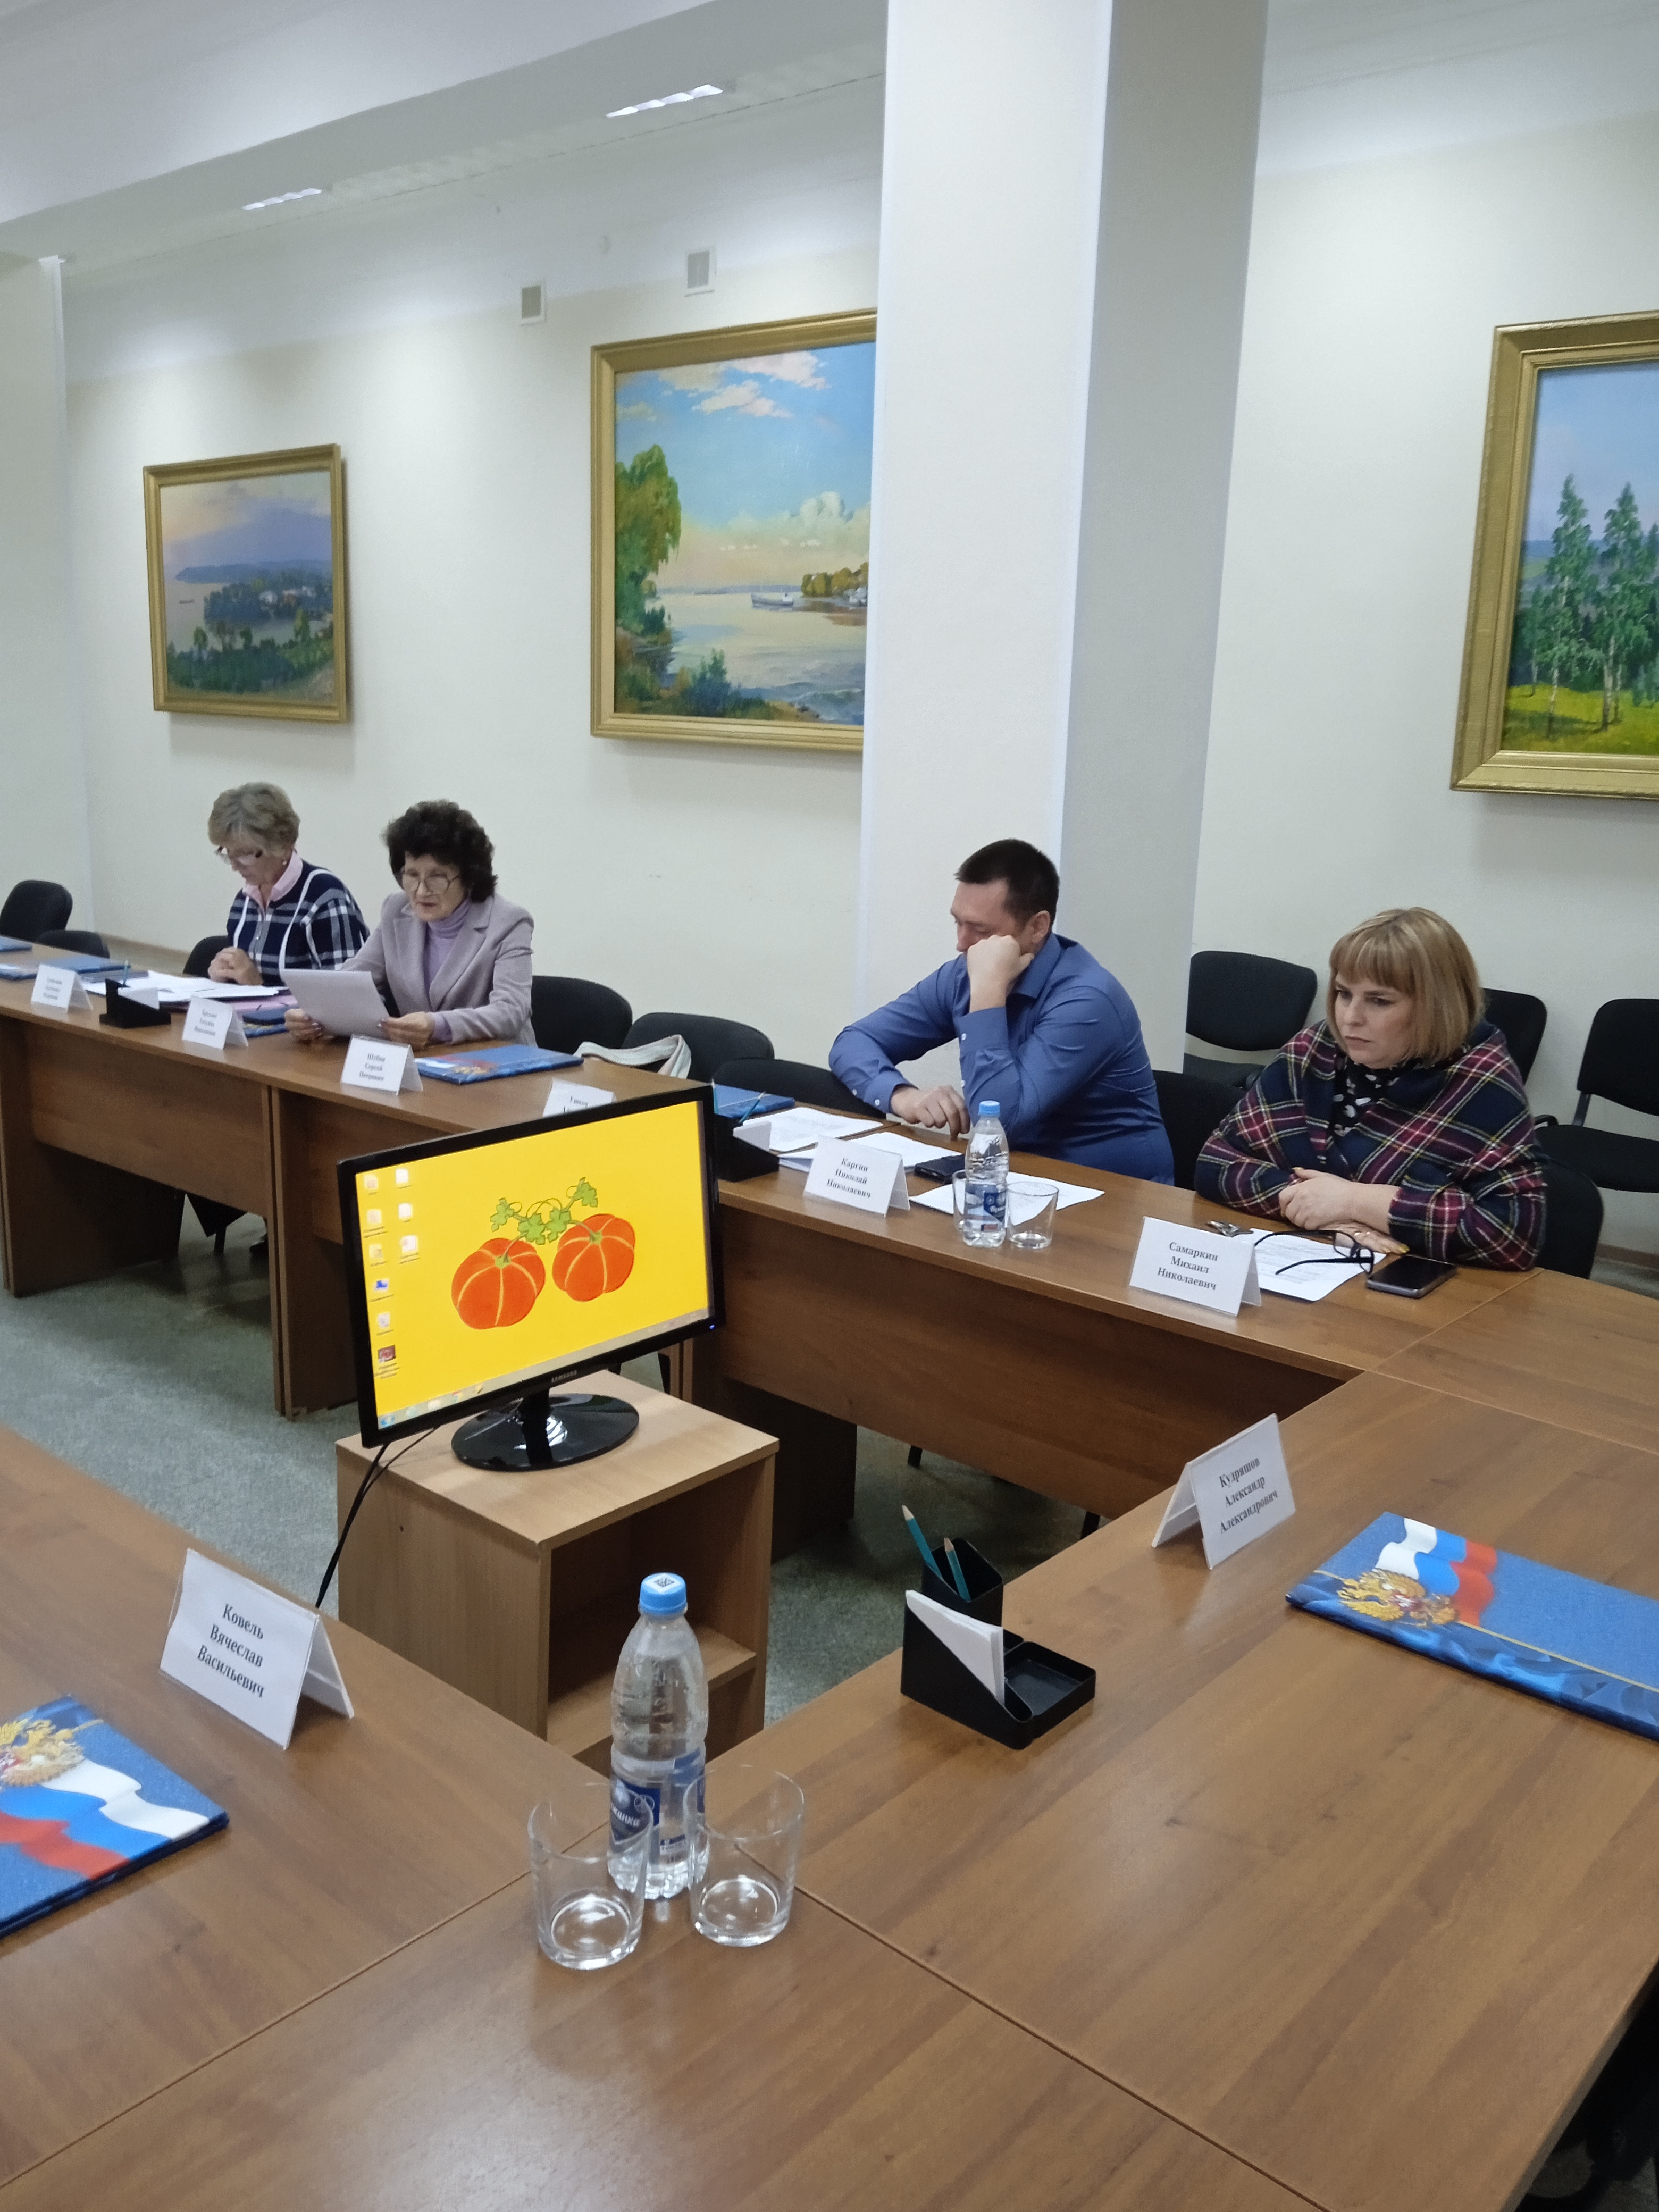 Заседание комиссии по бюджетной политике и управлению муниципальным имуществом Совета депутатов муниципального образования «Сенгилеевский район».